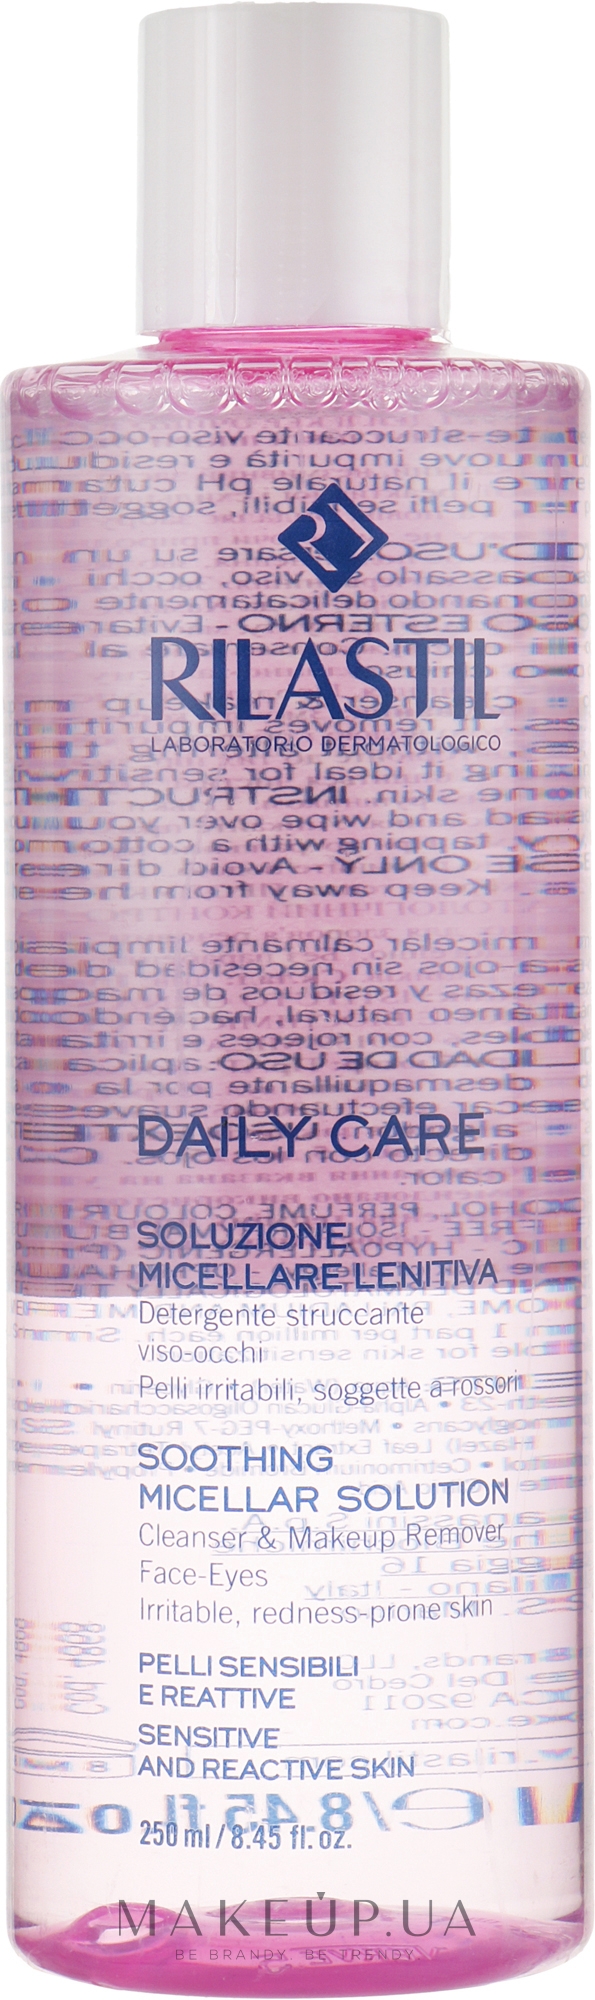 Очищающая мицеллярная вода для чувствительной кожи лица и глаз - Rilastil Daily Care Soluzione Micellare Lenitiva — фото 250ml